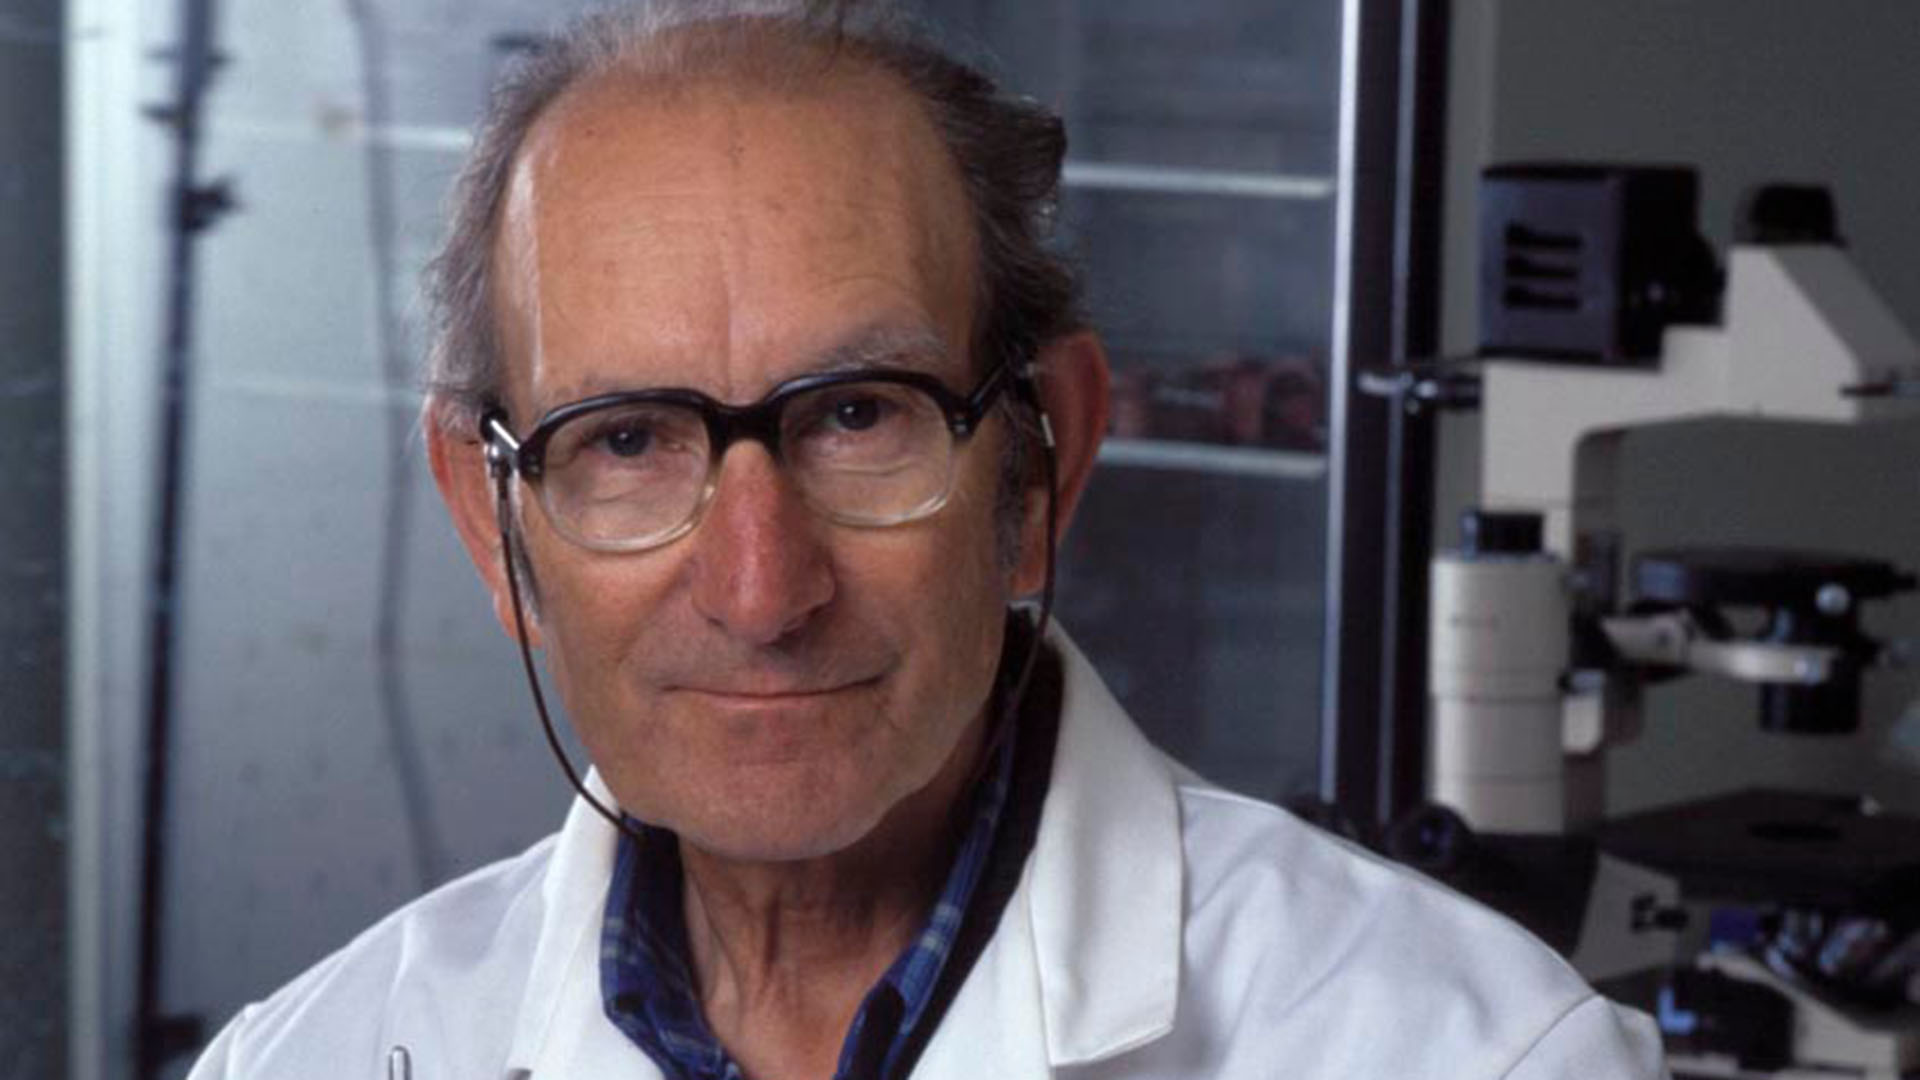 El gran hallazgo del argentino César Milstein fue descubrir el principio que rige la producción de los anticuerpos monoclonales